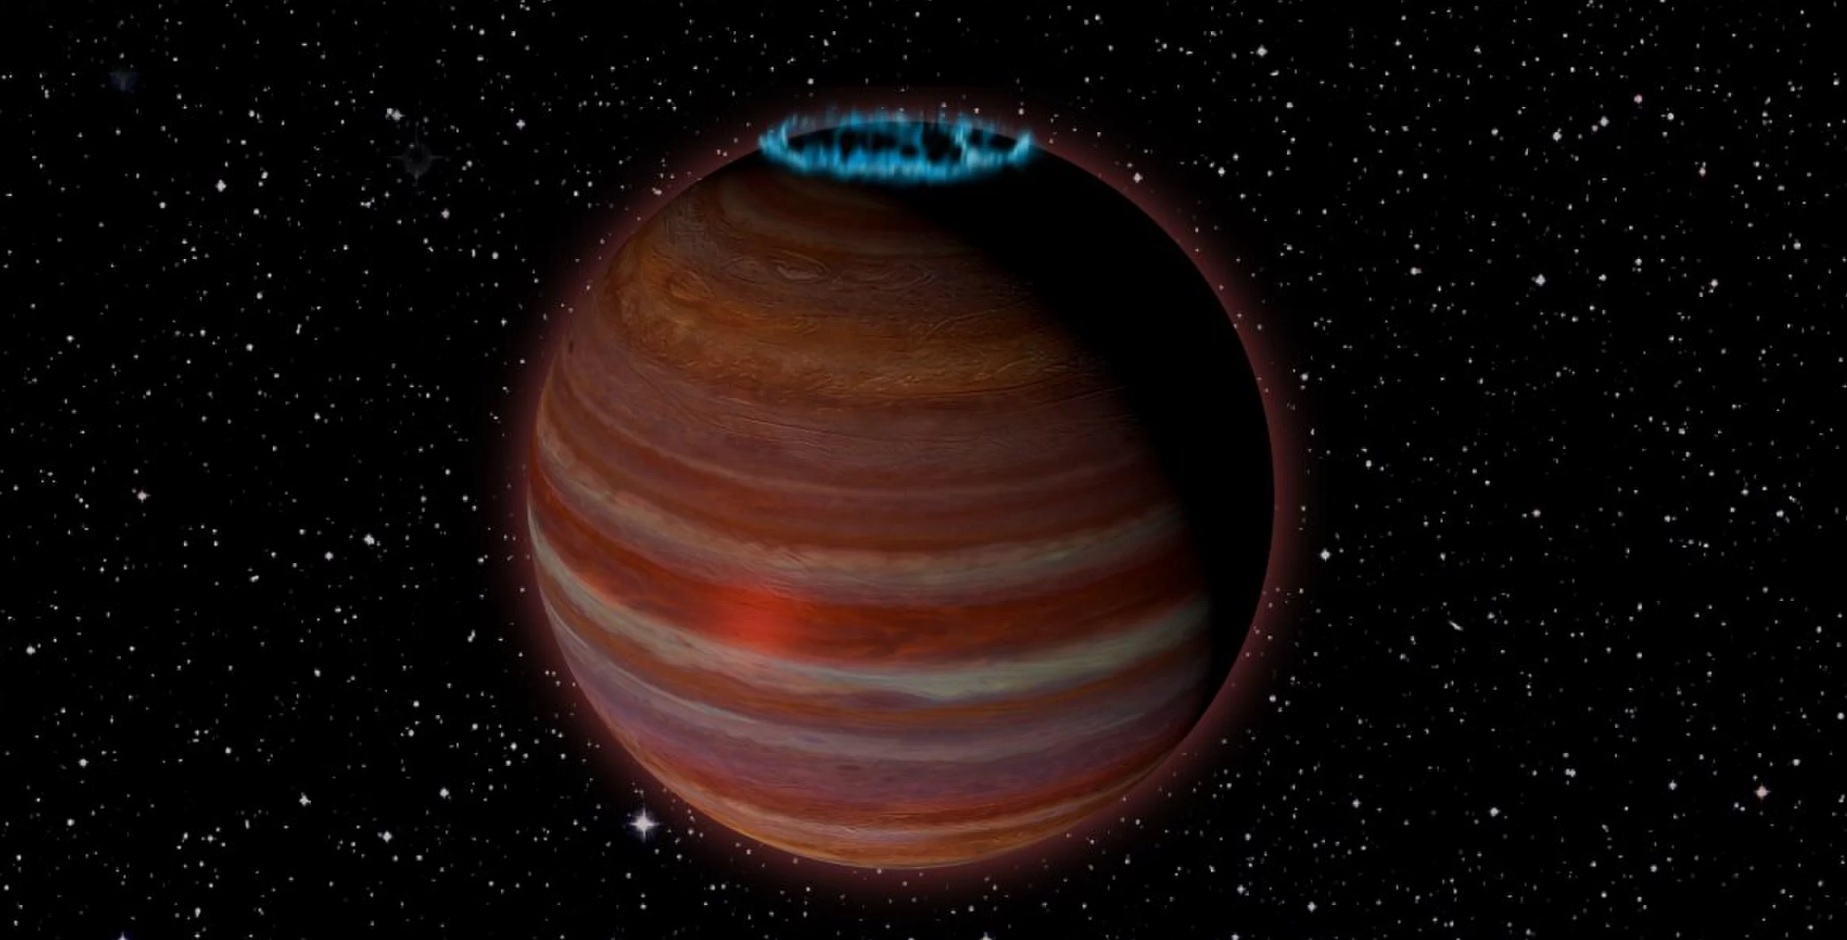 वैज्ञानिकों की खोज की है एक बड़ा भटक ग्रह के साथ एक शक्तिशाली चुंबकीय क्षेत्र